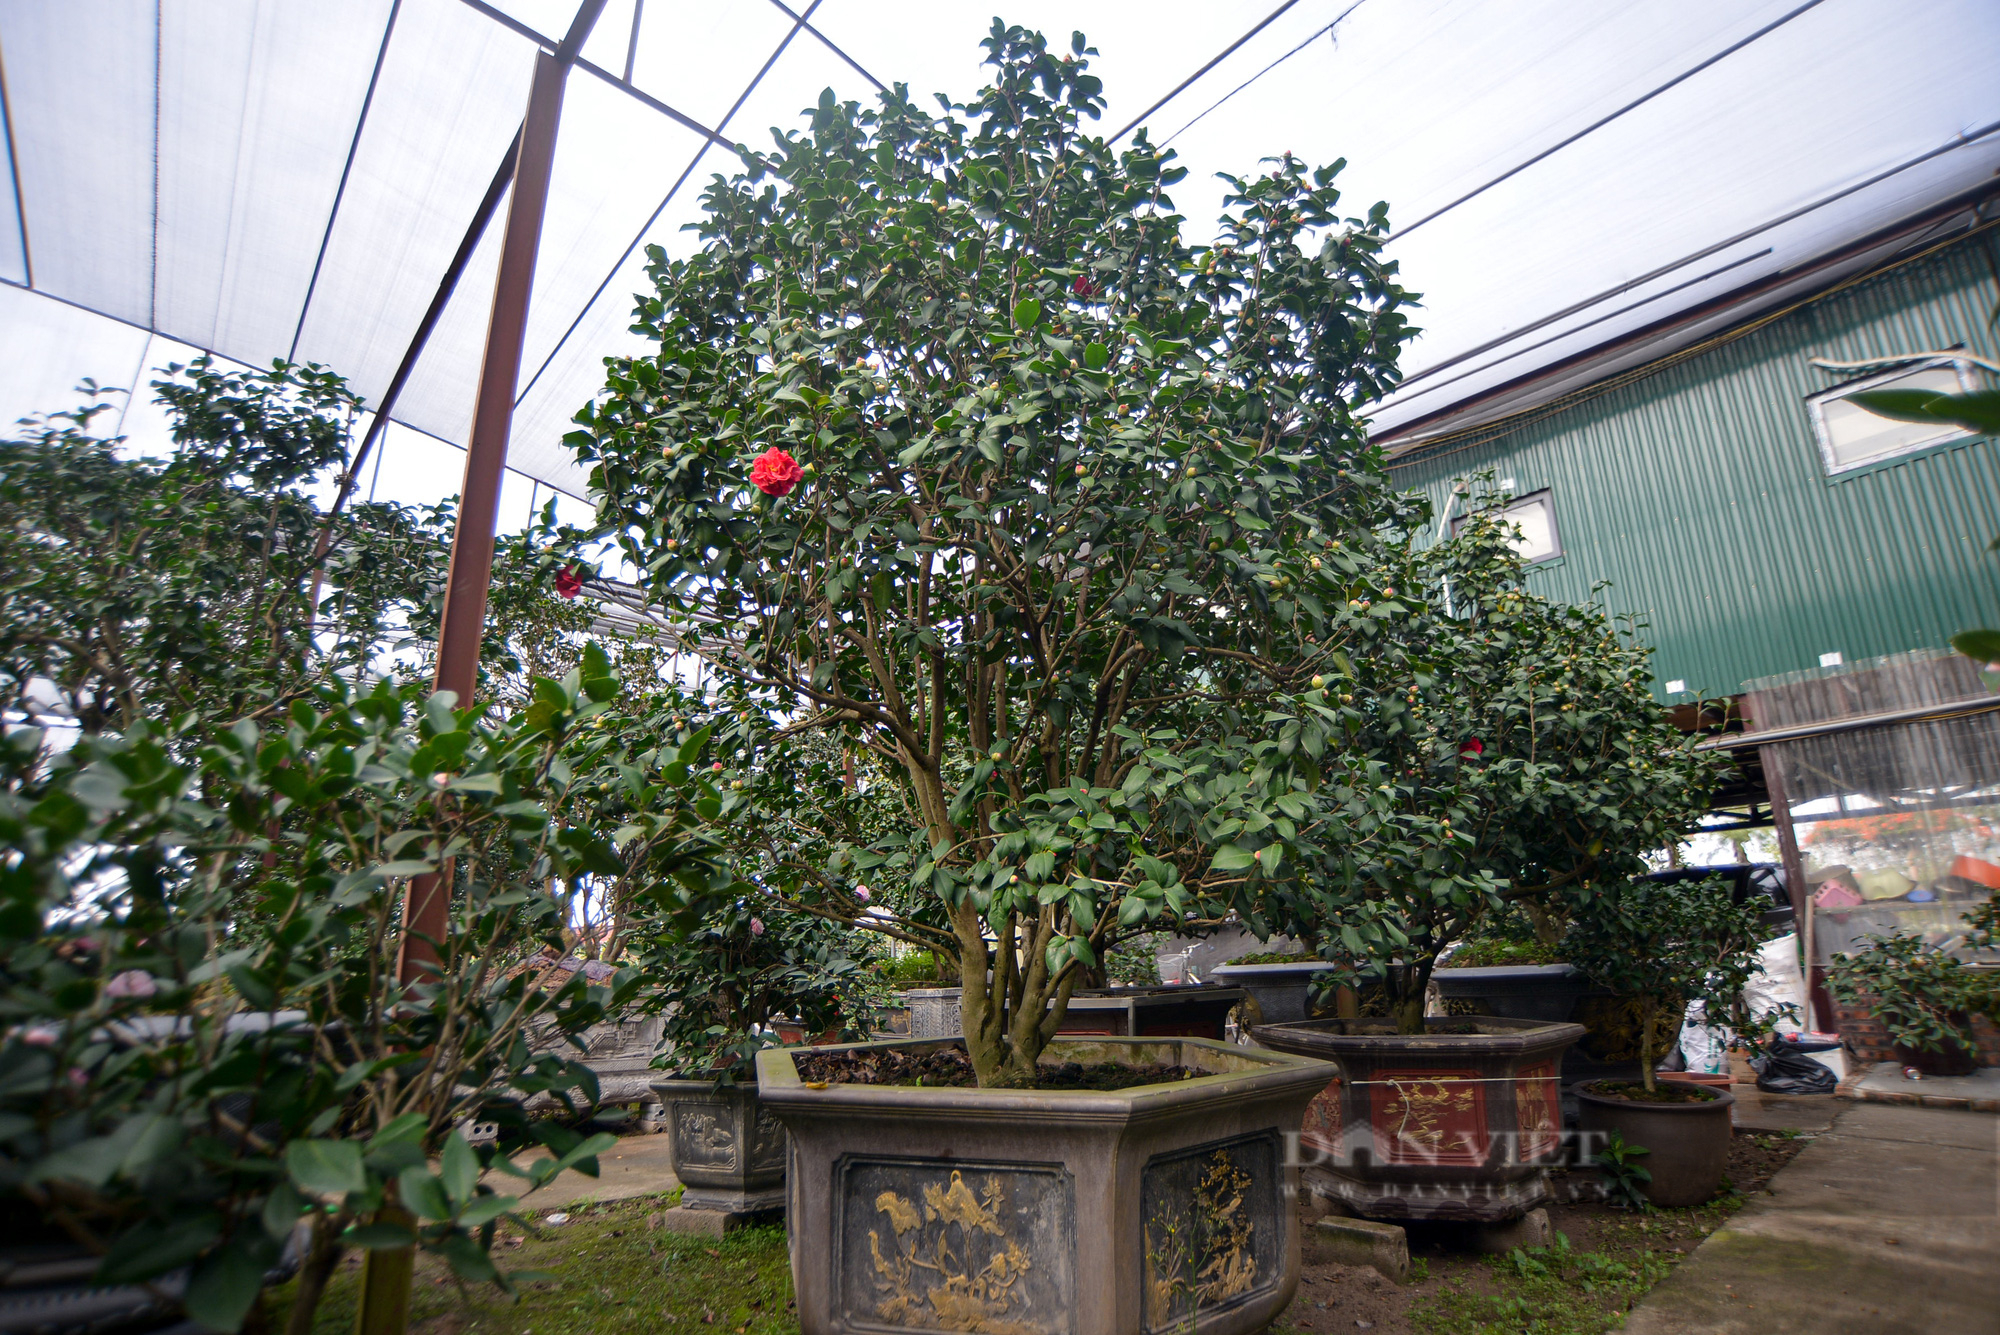 Ghé thăm vườn hoa trà trị giá bạc tỉ của anh nông dân tại Hưng Yên - Ảnh 11.